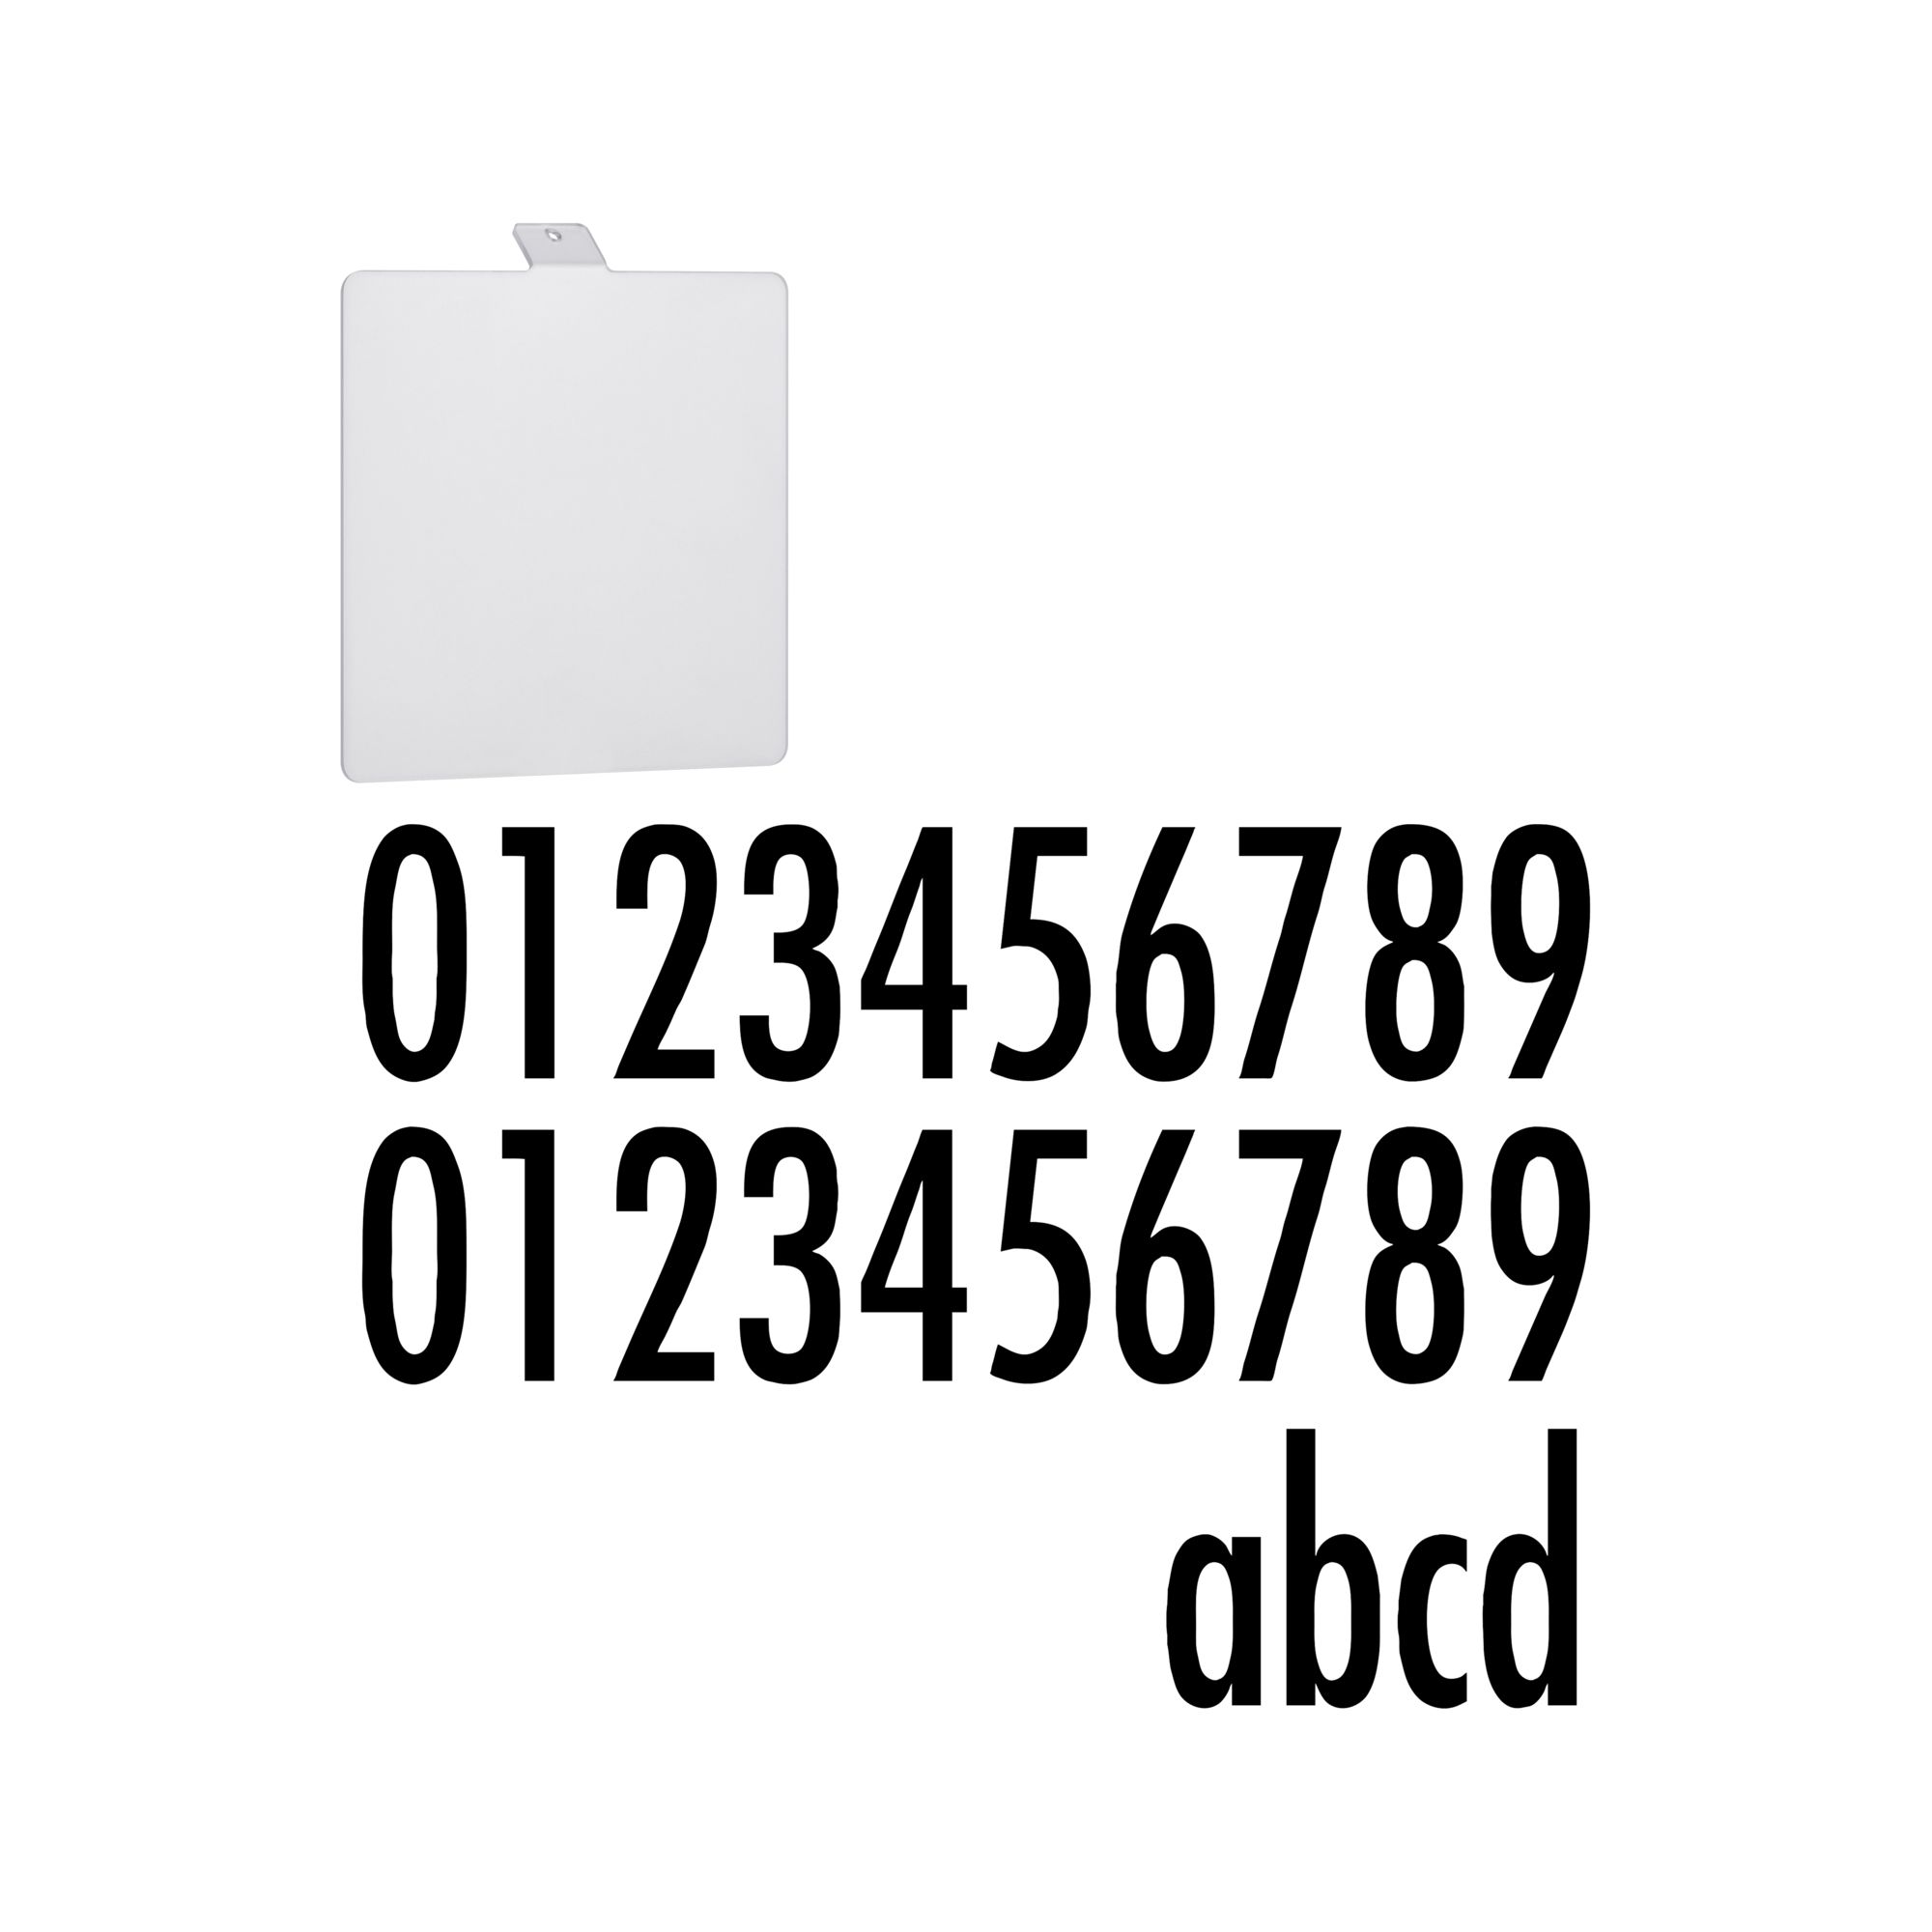 Hausnummermodul für Wandleuchte 'Soley' 13,4 x 12 x 0,2 cm + product picture